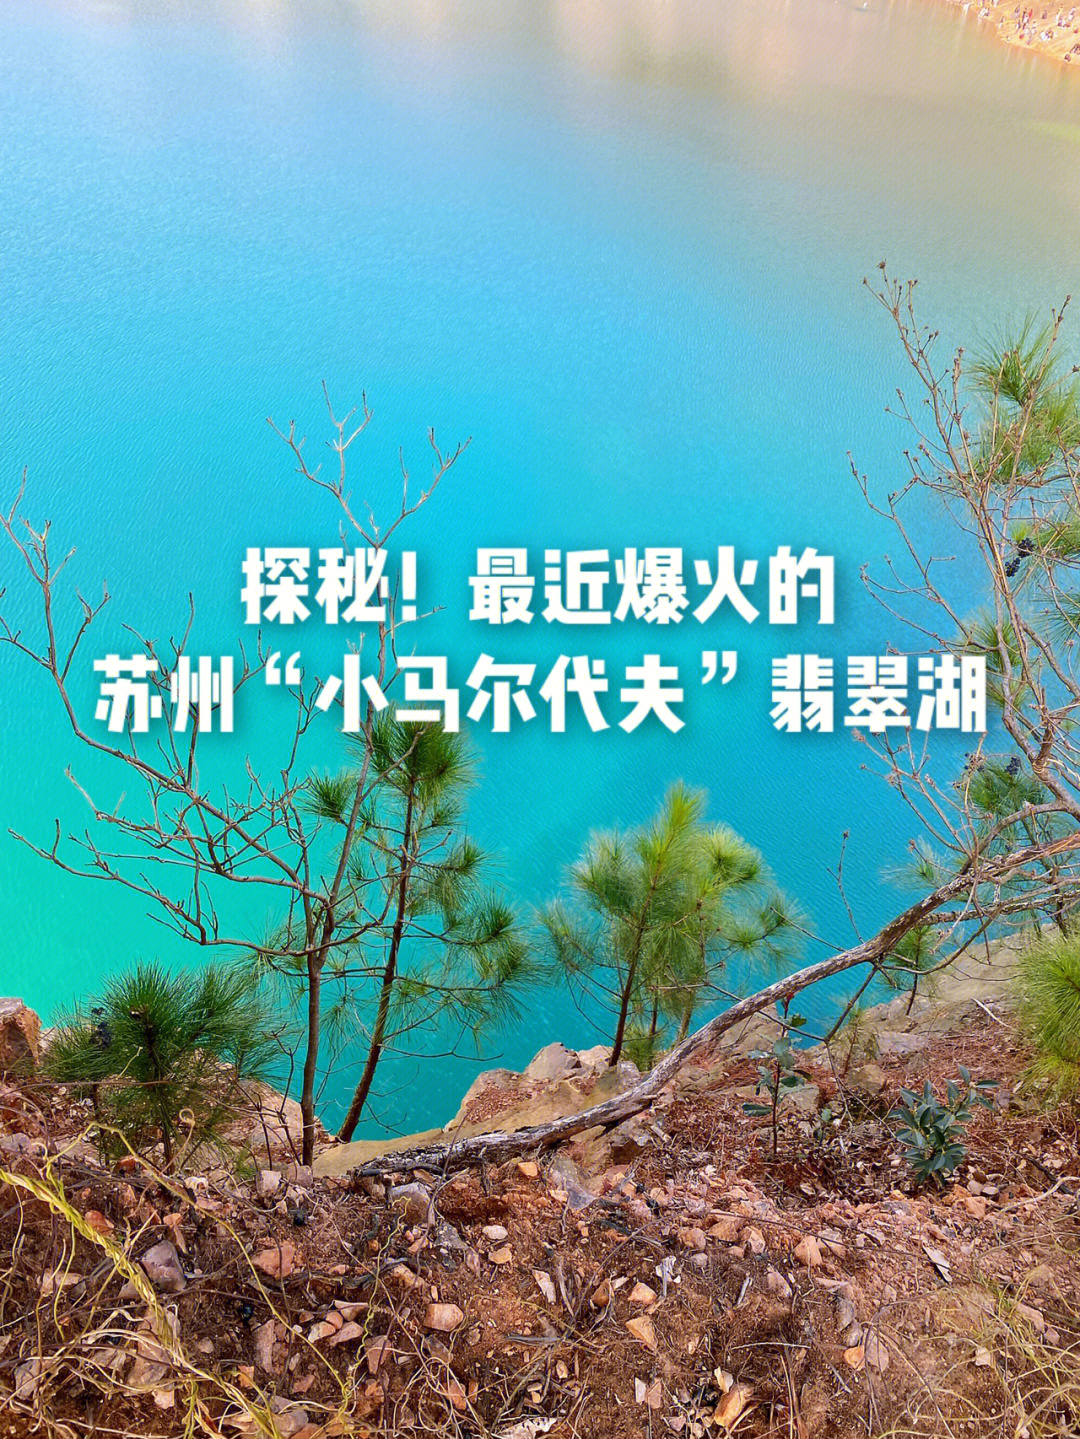 苏州翡翠湖事件图片